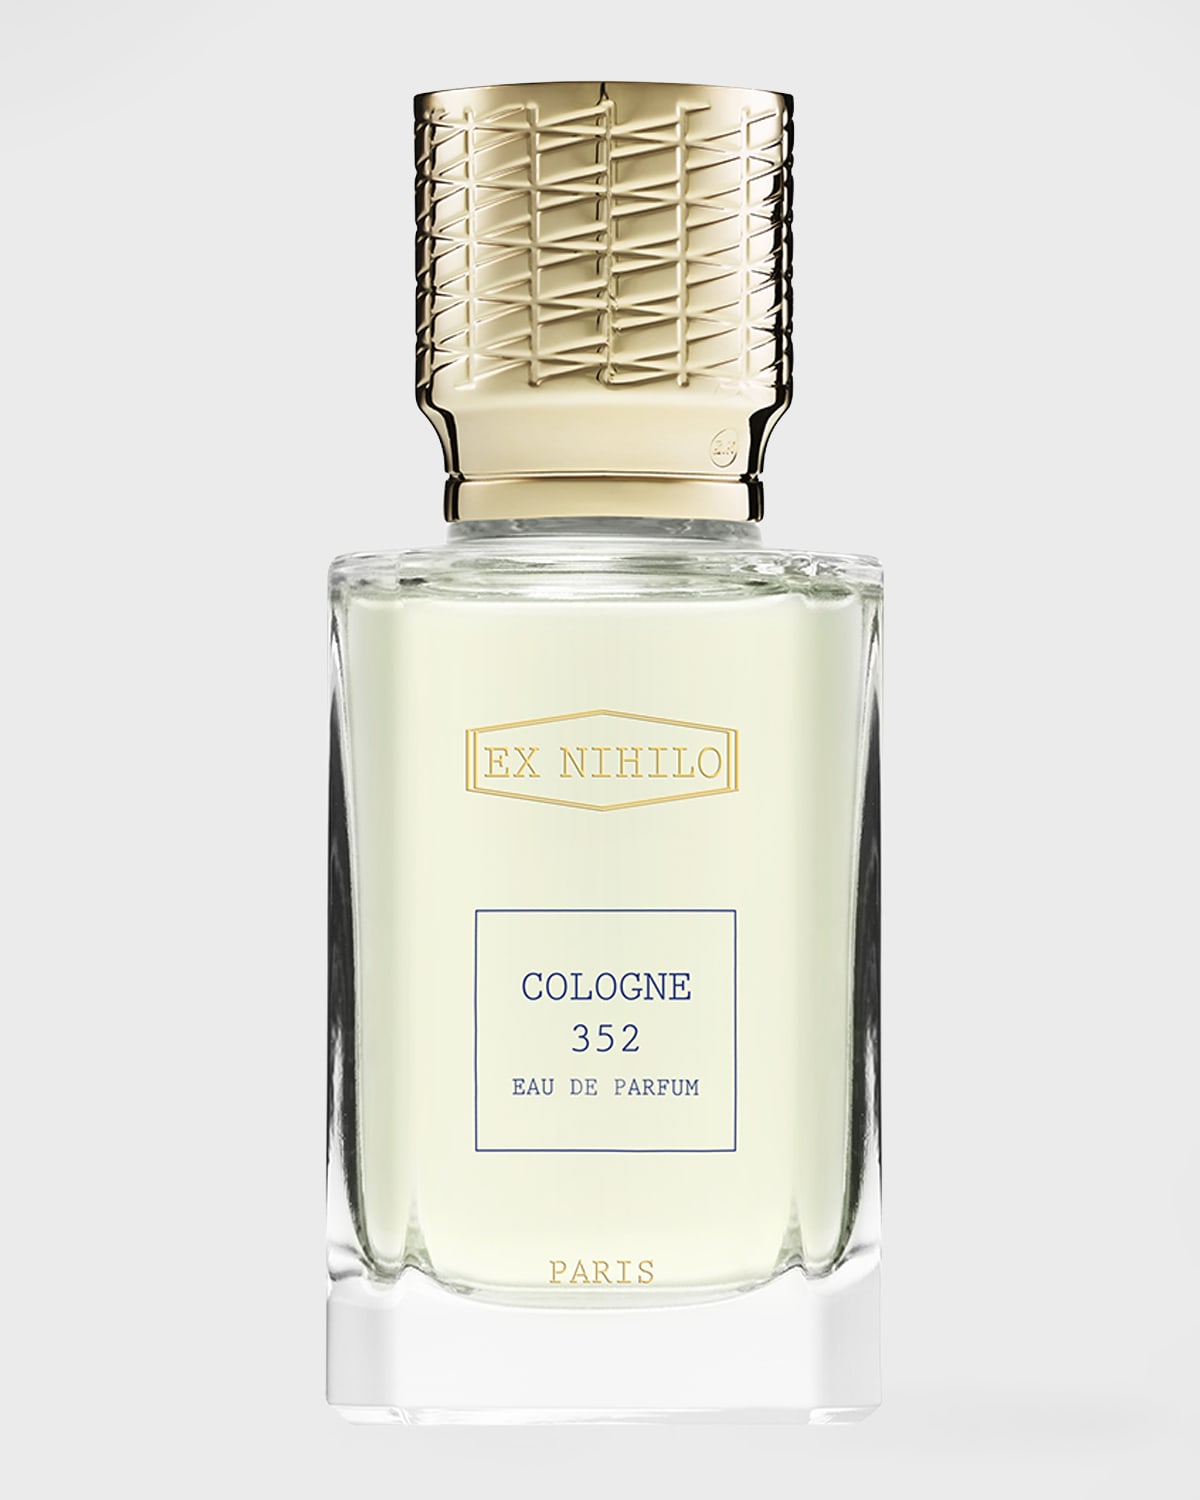 Ex Nihilo Cologne 352 Eau de Parfum, 1.7 oz./ 50 mL